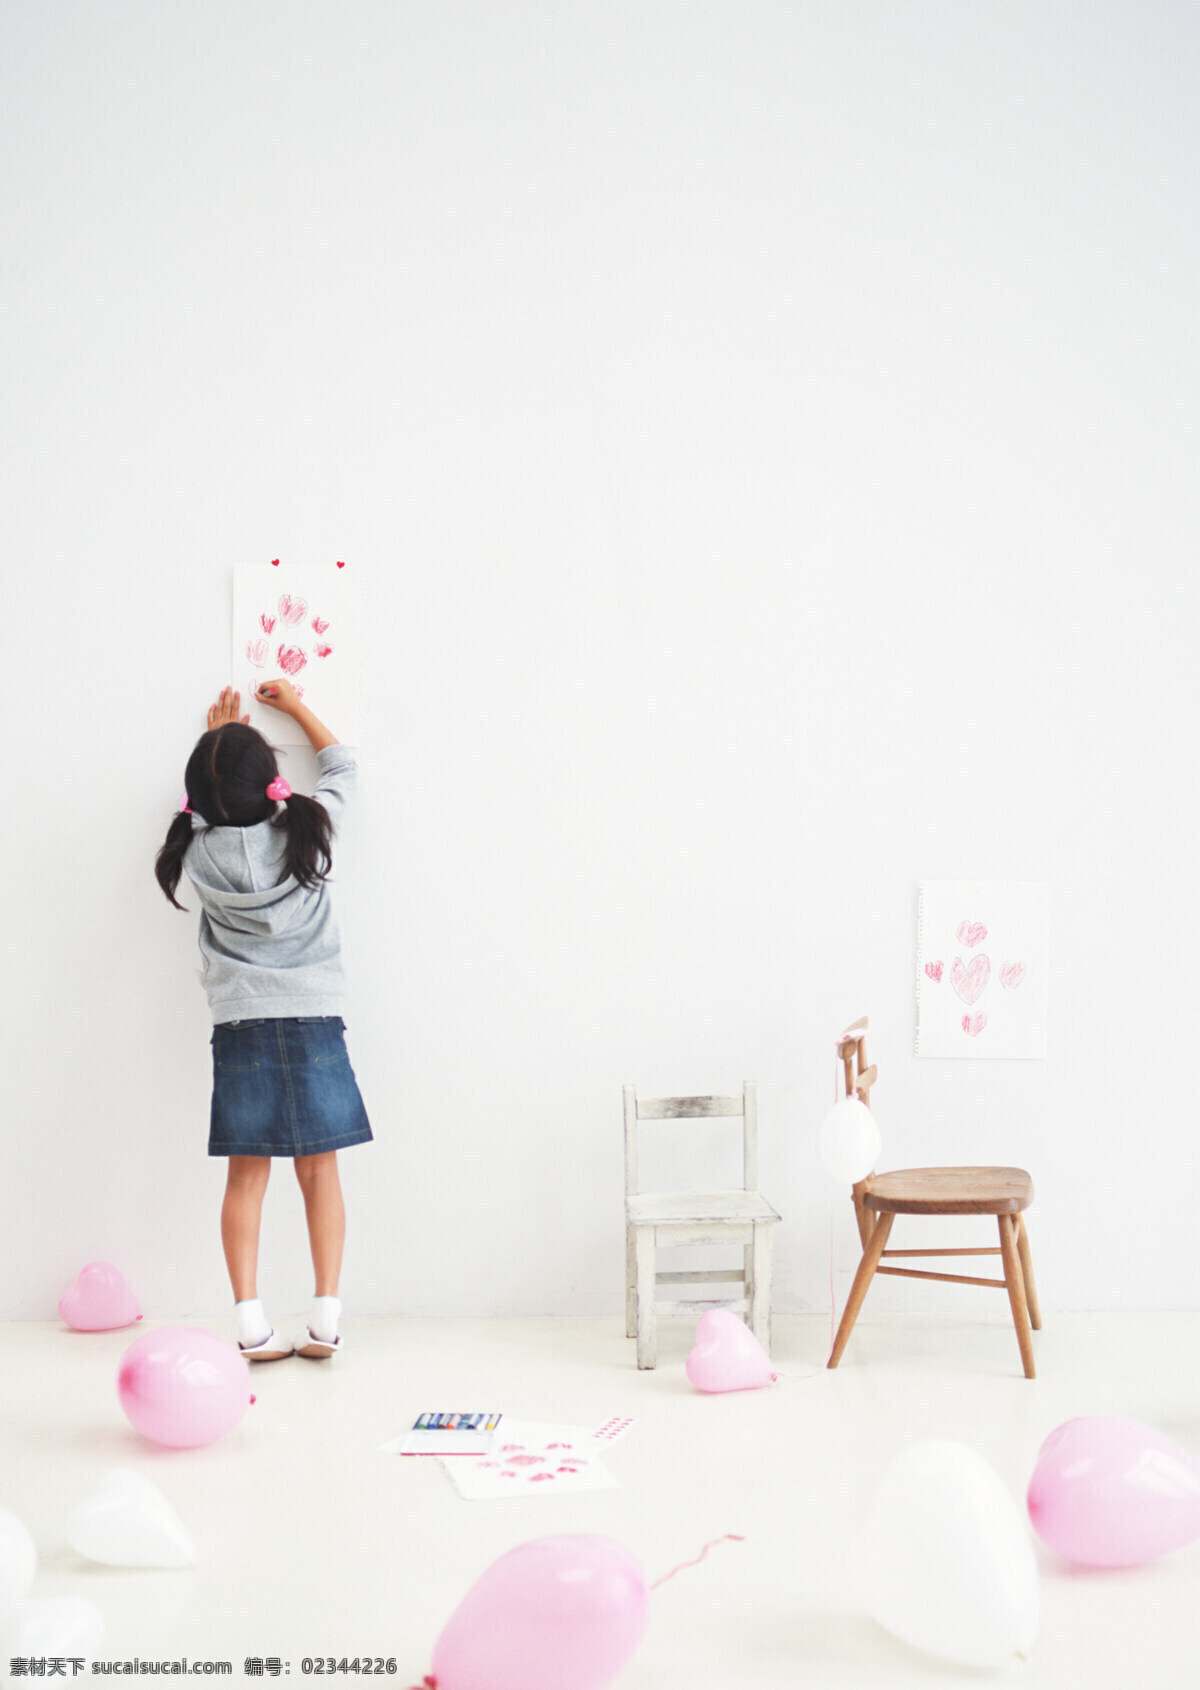 粉色 心 型 气球 可爱 小女 生 爱心 画画 小女孩 小凳子 人物图库 儿童幼儿 漂亮 儿童 摄影图库